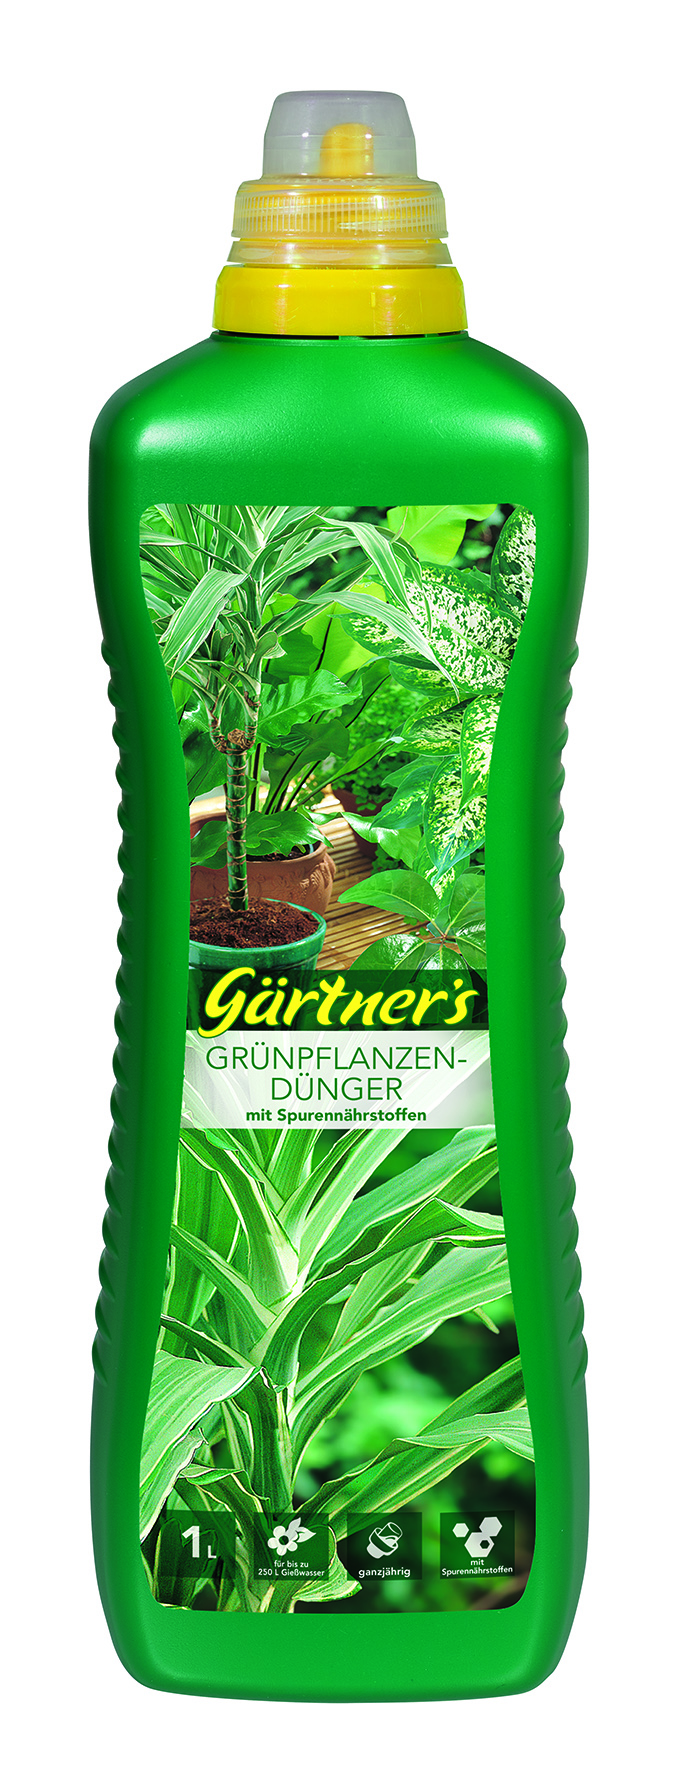 Gärtner's Grünpflanzendünger mit Spurennährstoffen 1 L